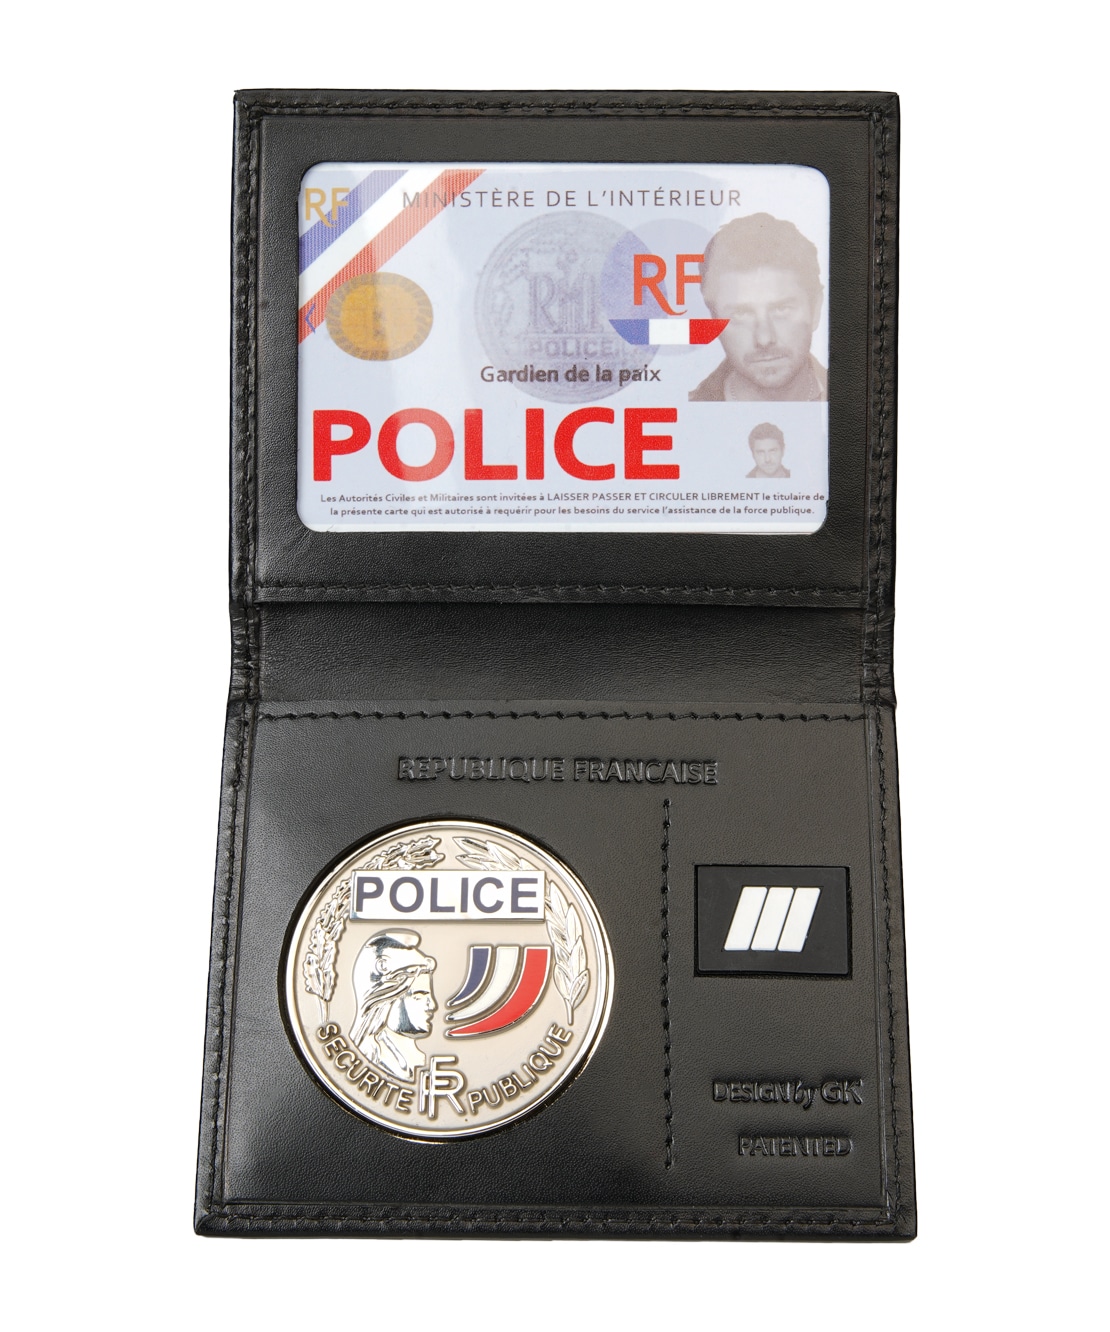 Porte-carte Police: 3 volets avec médaille et grade, cuir véritable